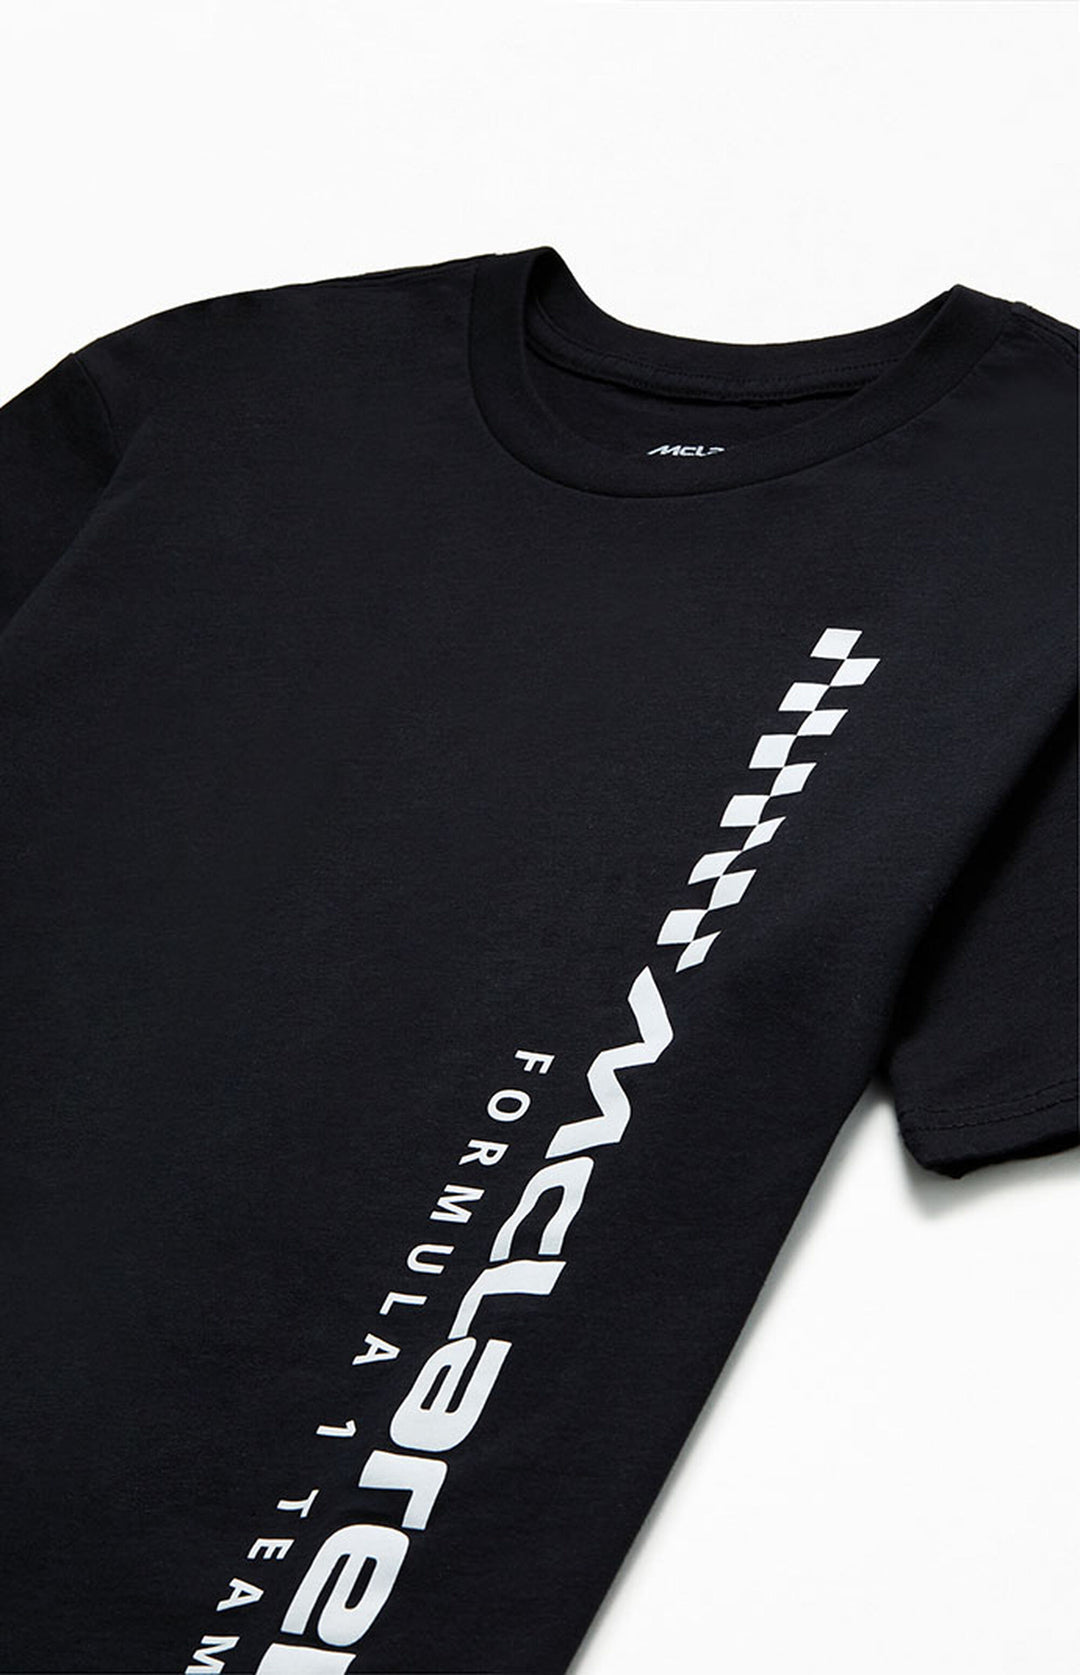 Camiseta del equipo McLaren Formula 1™ - Unisex - Negro